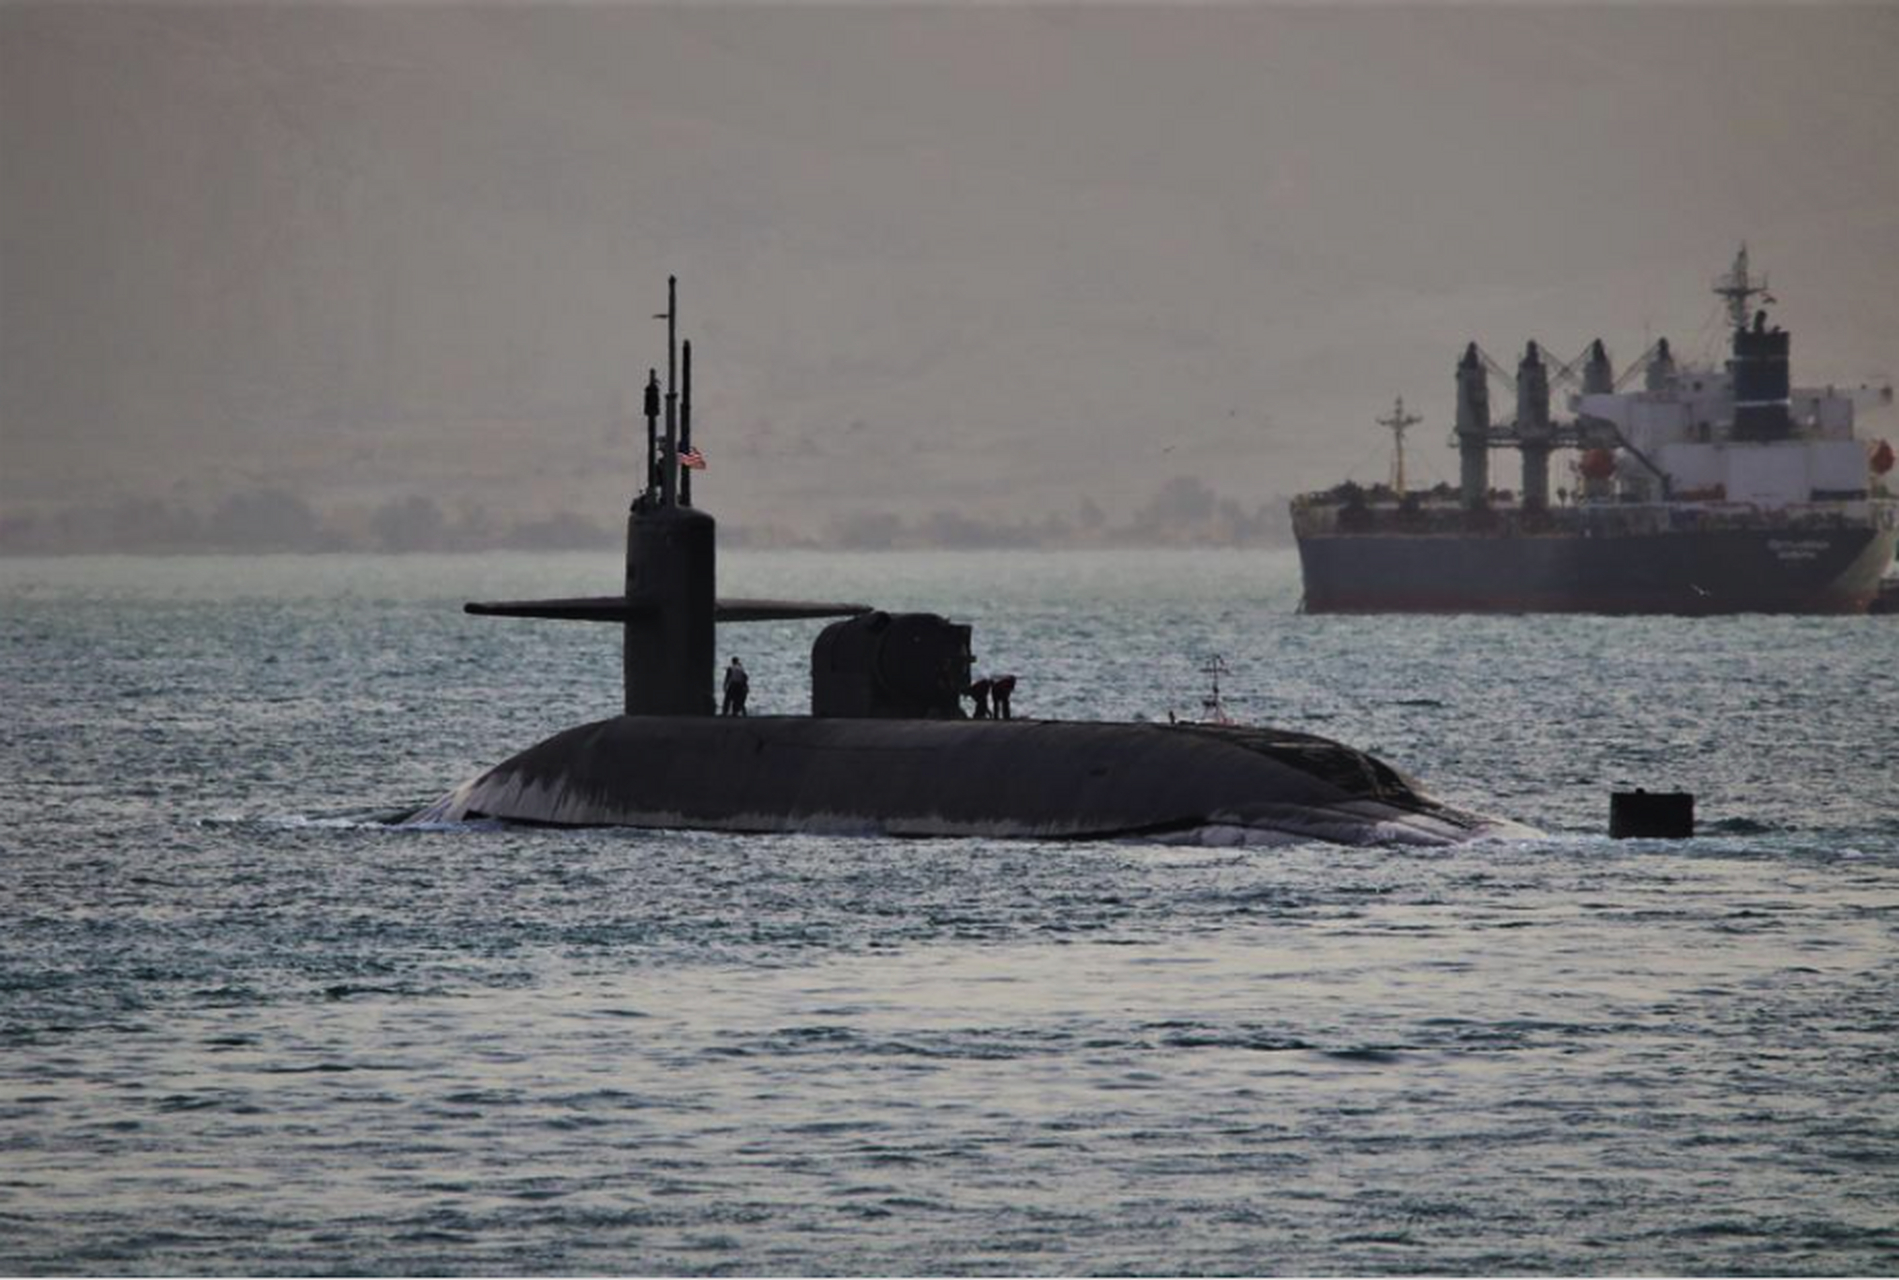 外媒快报:美国海军宣布将佛罗里达号导弹潜艇部署到中东地区